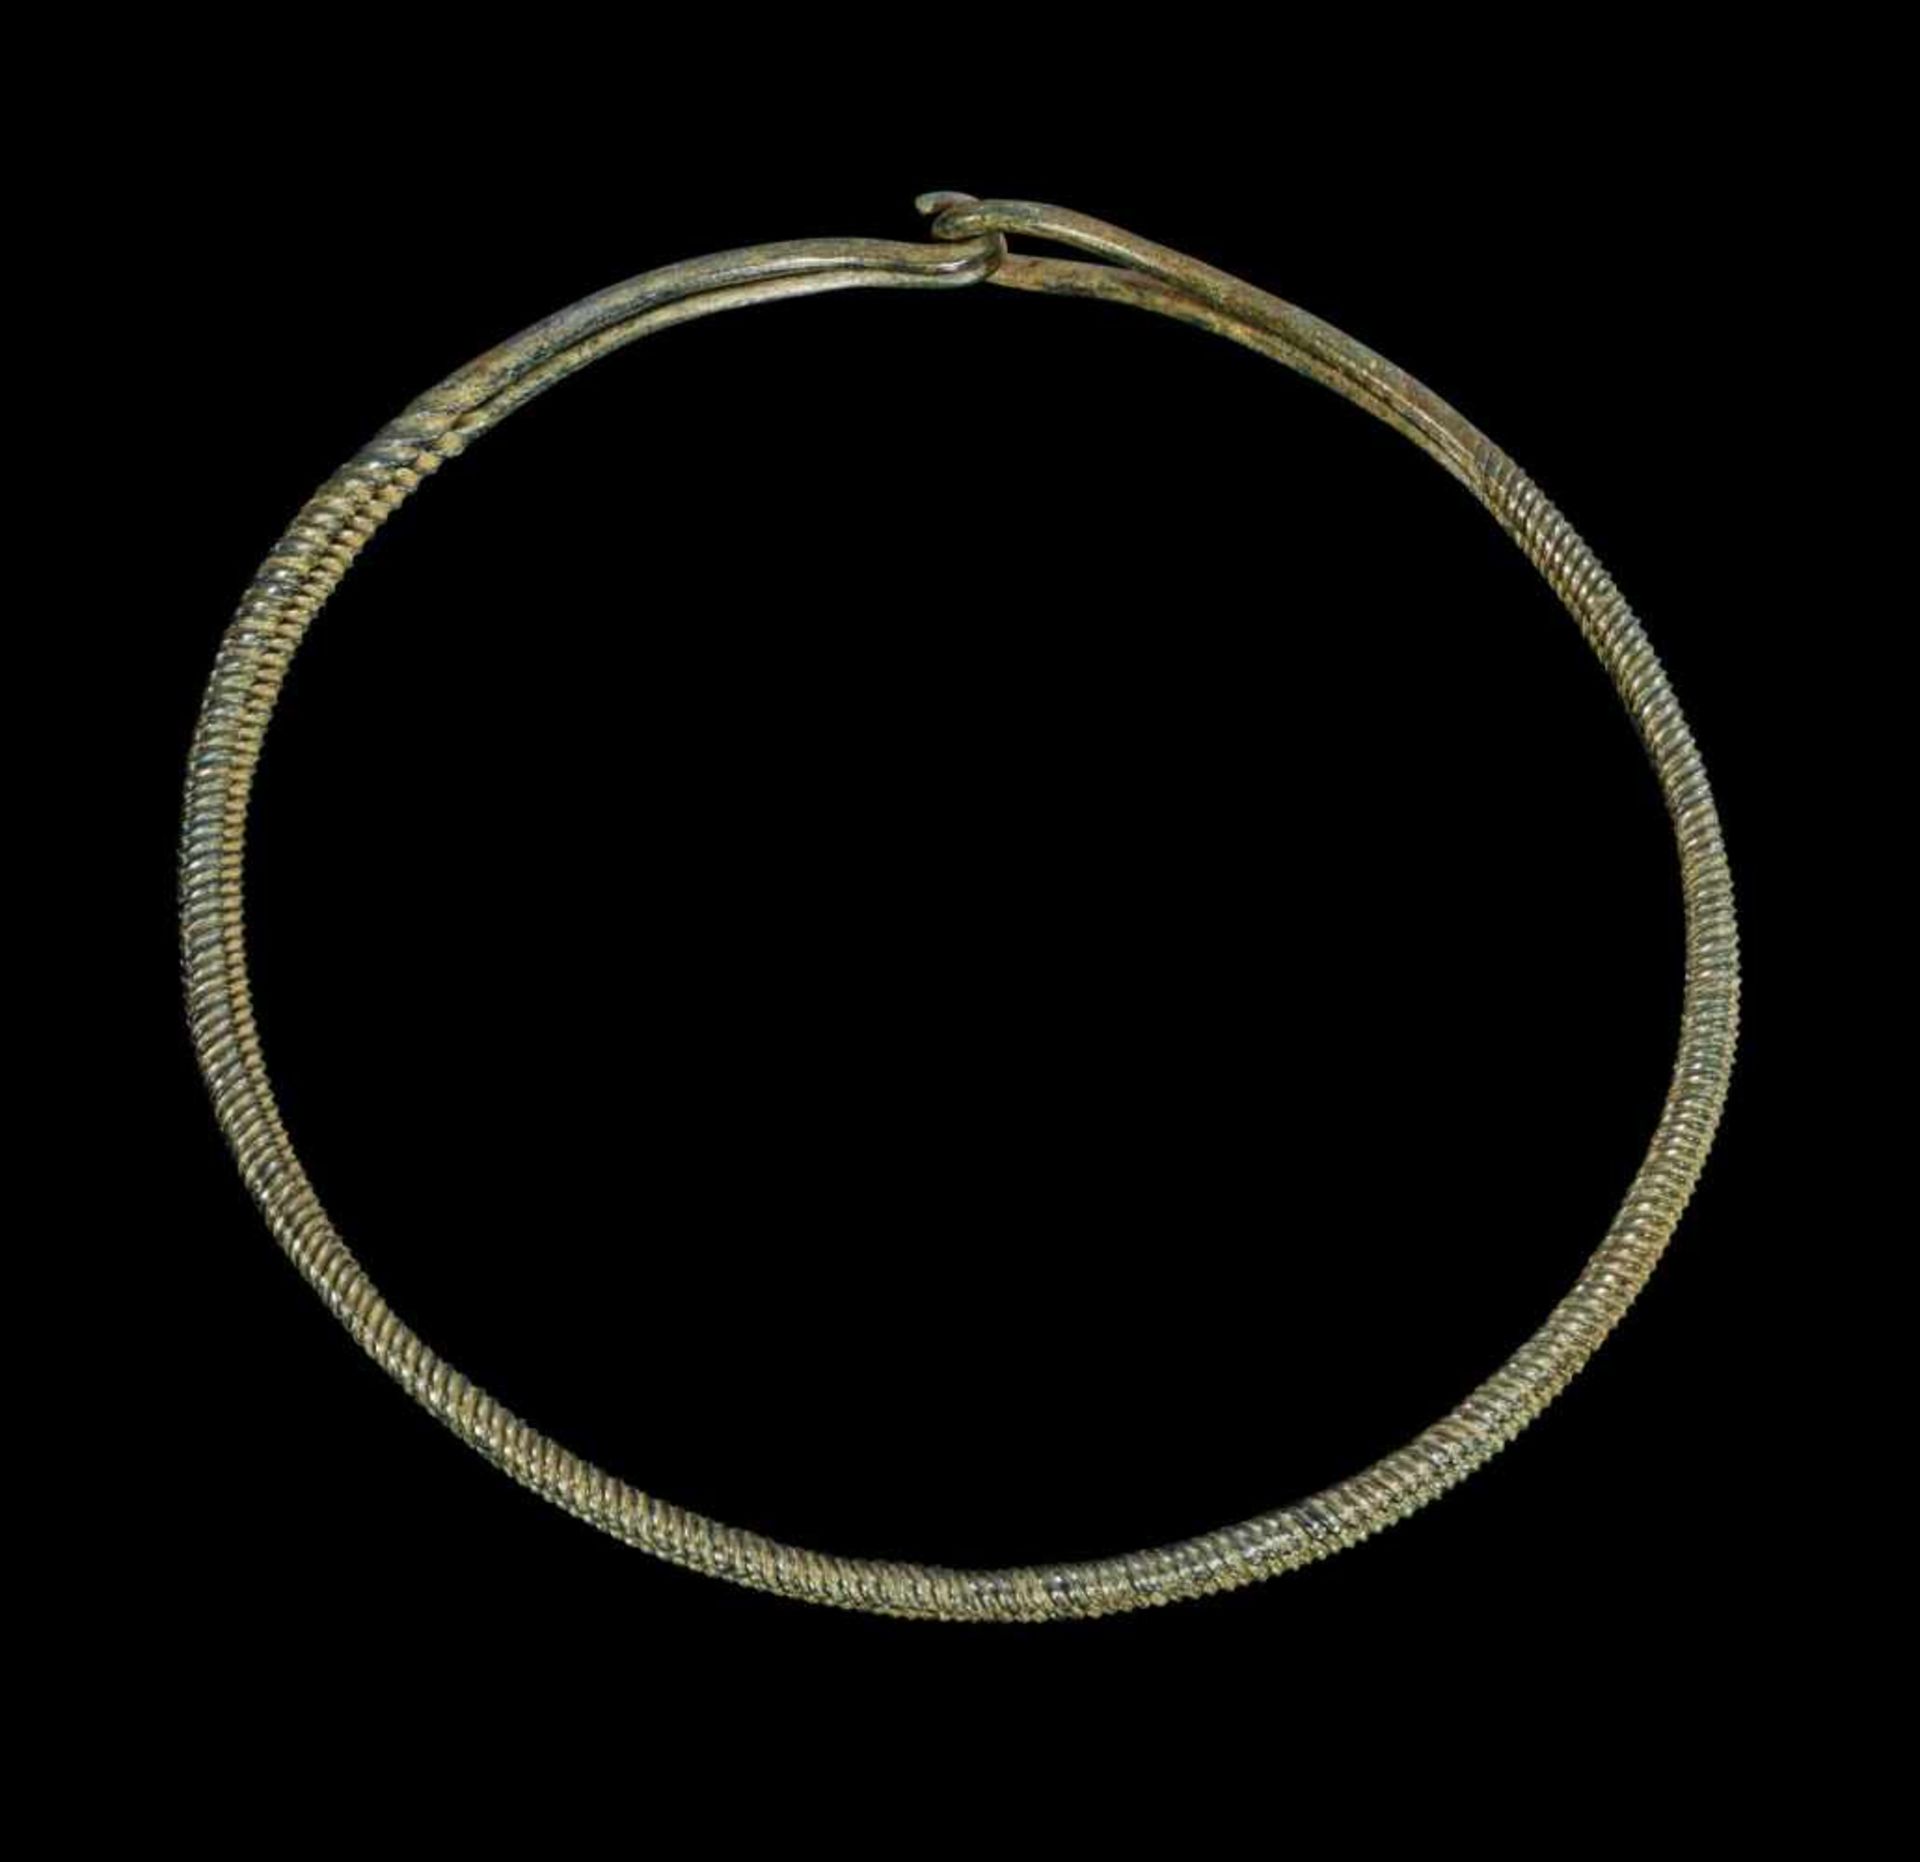 Doppel-Halsring aus Bronze. Bronzezeit, 1200 - 800 v. Chr. ø 18cm. Aus rundem, tordiertem Draht, der